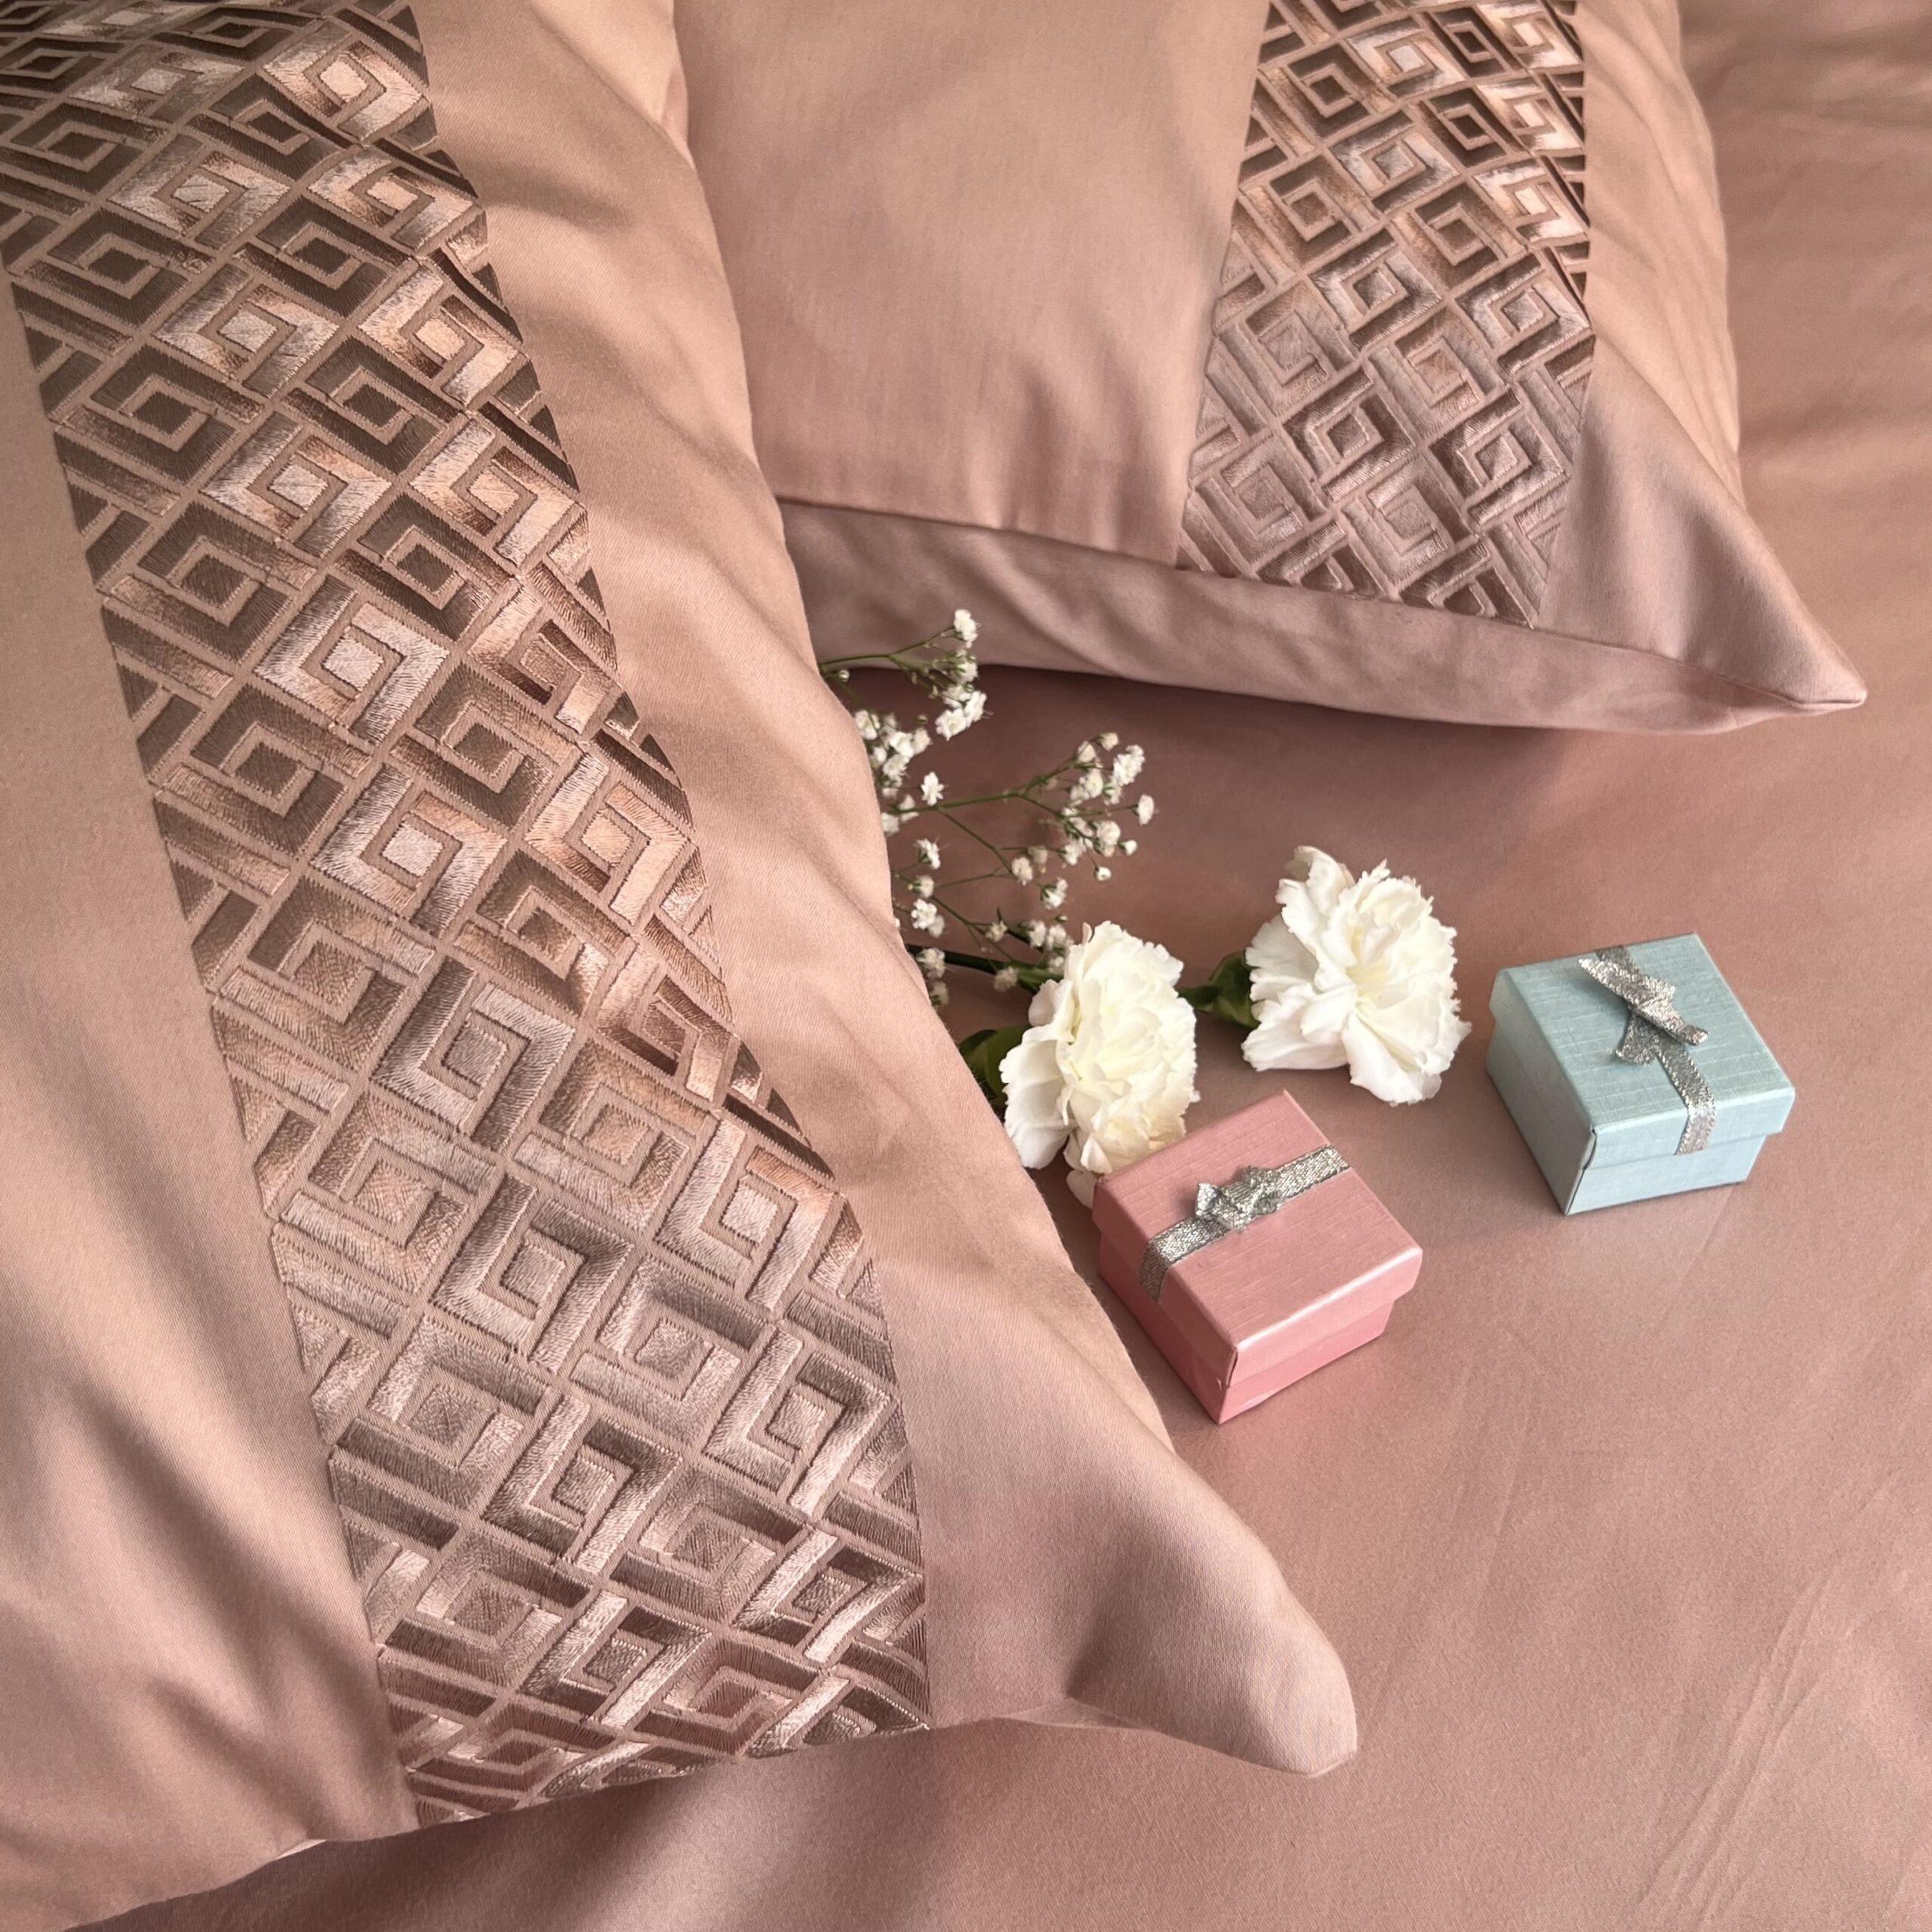 Squarish Rose Dreams Pillow Covers (Set of 2)